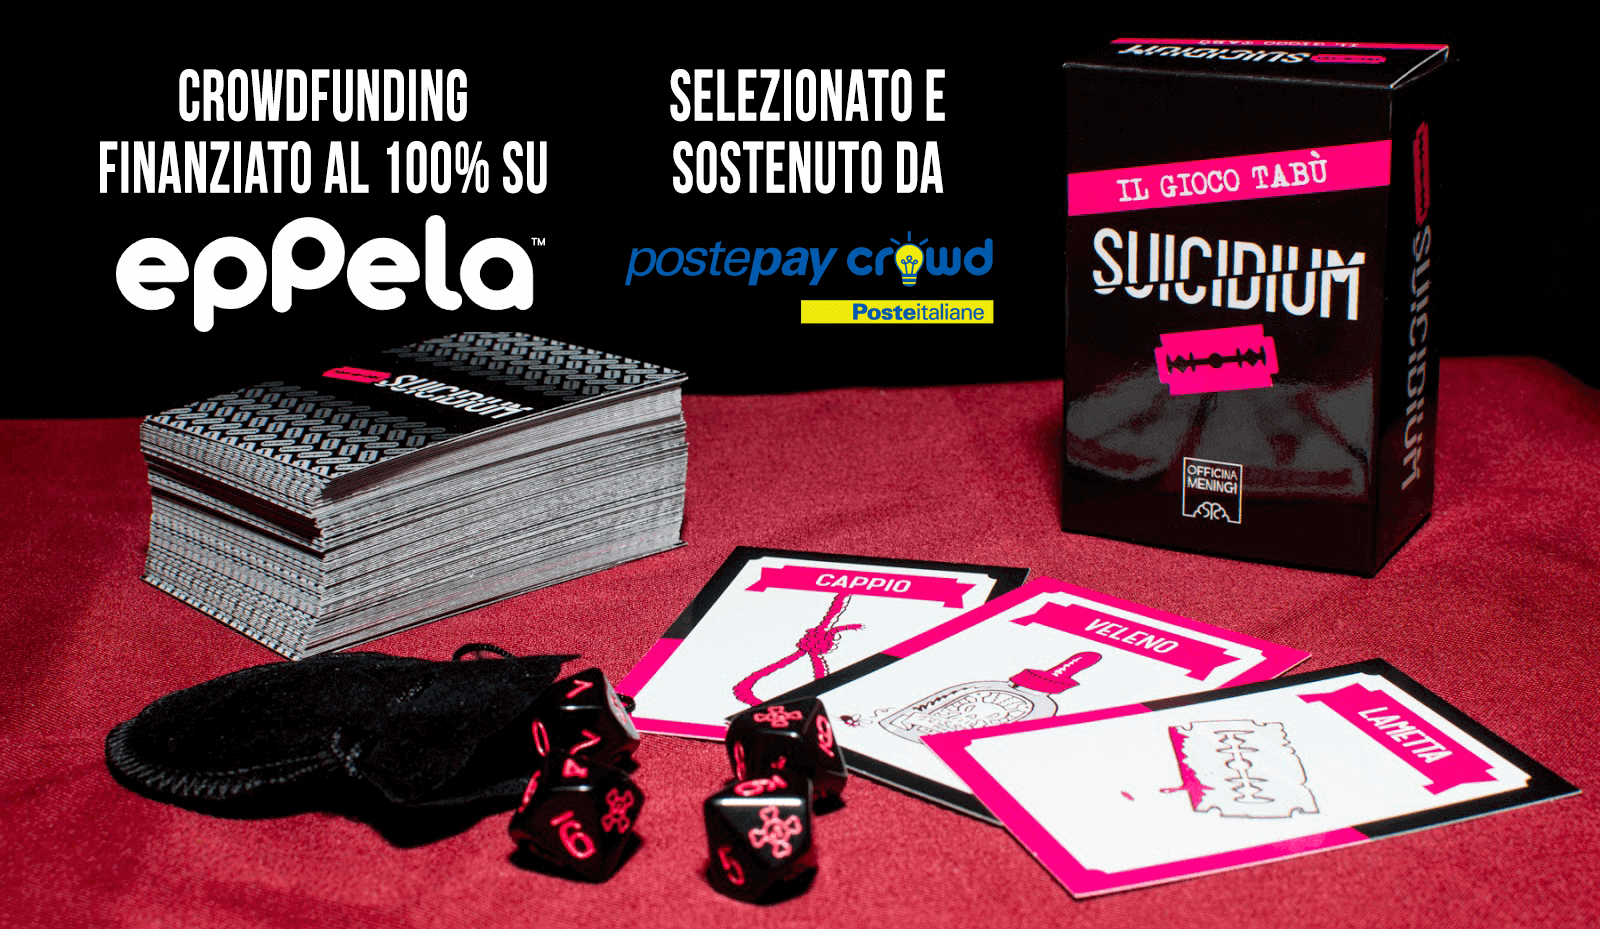 Suicidium - il gioco tabù